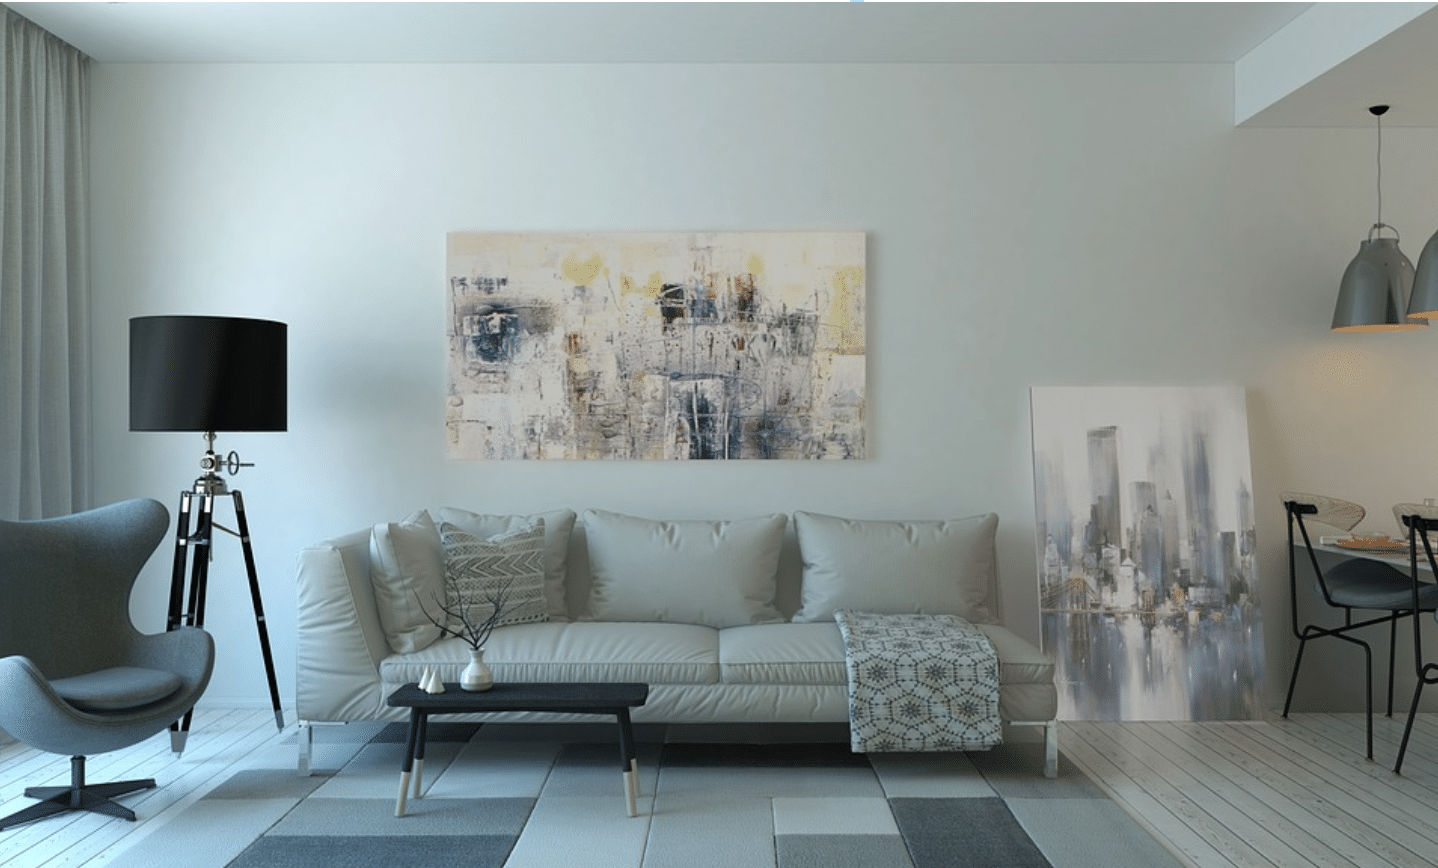 White and silver living room interior design idea